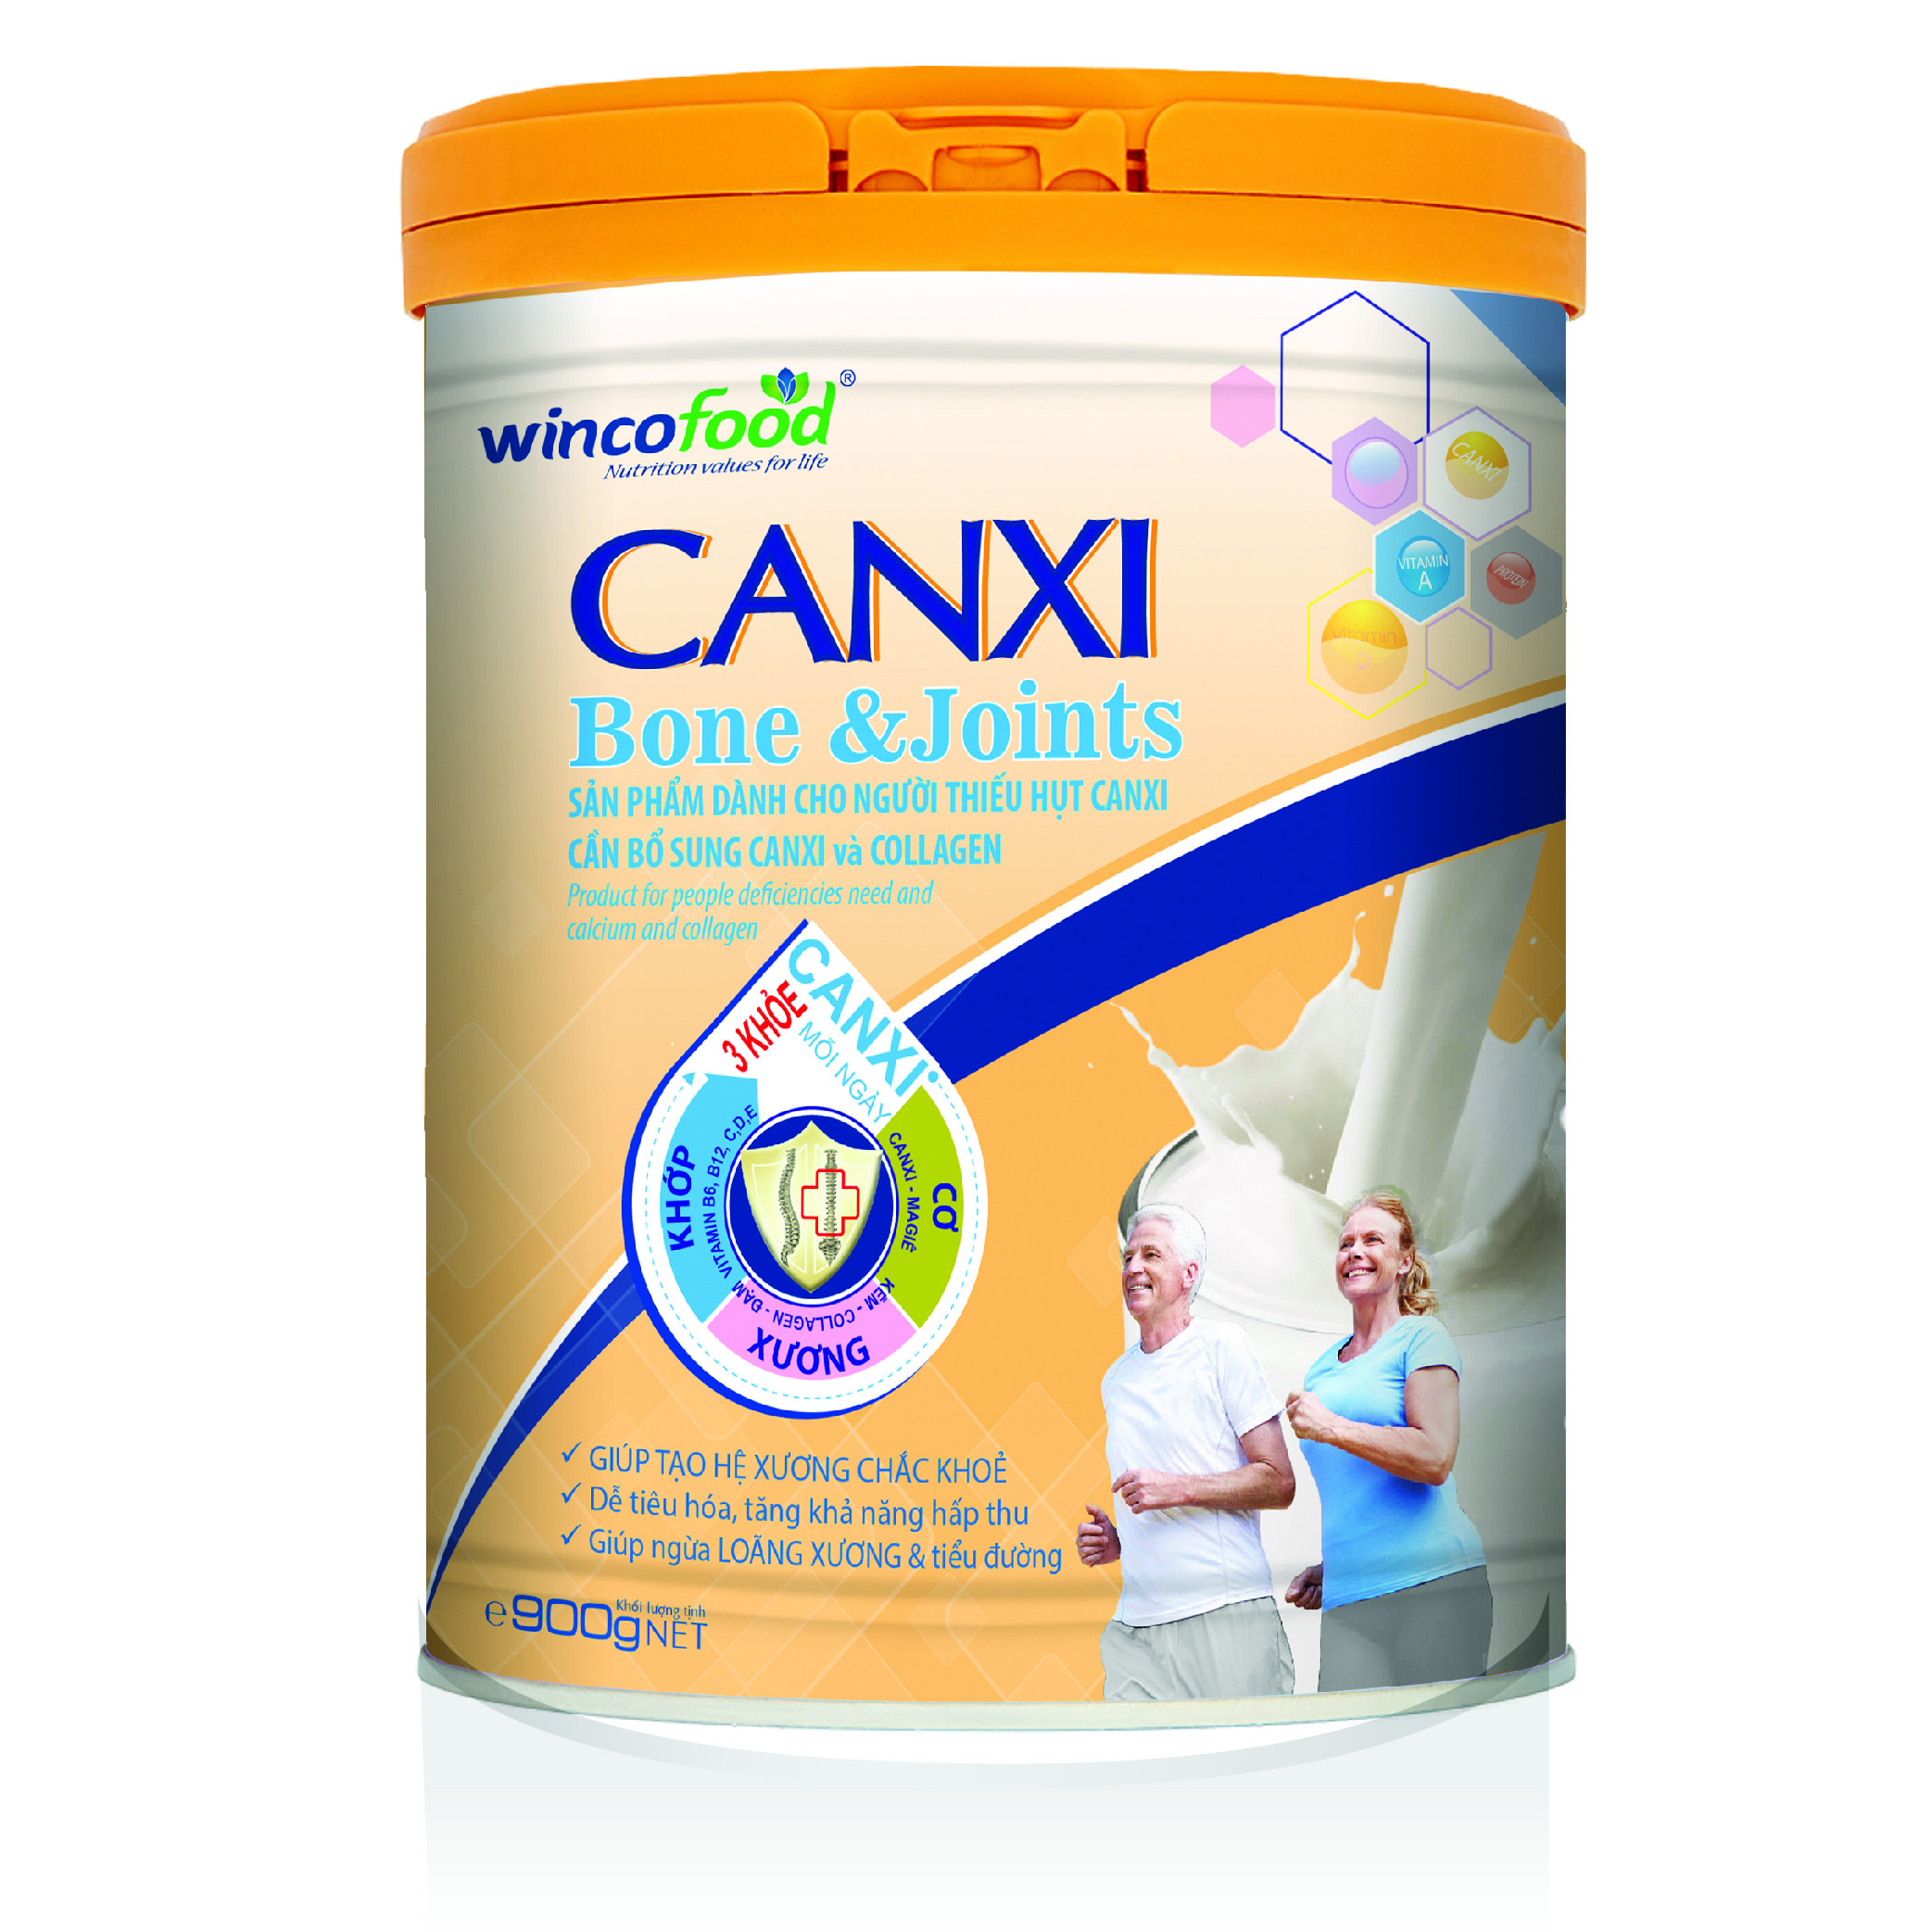 Sữa bột Wincofood Canxi Bone &amp; Joints 800g : Bổ sung Canxi - Collagen và đường ăn kiêng tốt cho cơ xương khớp, chống lão hóa và ngừa tiểu đường.